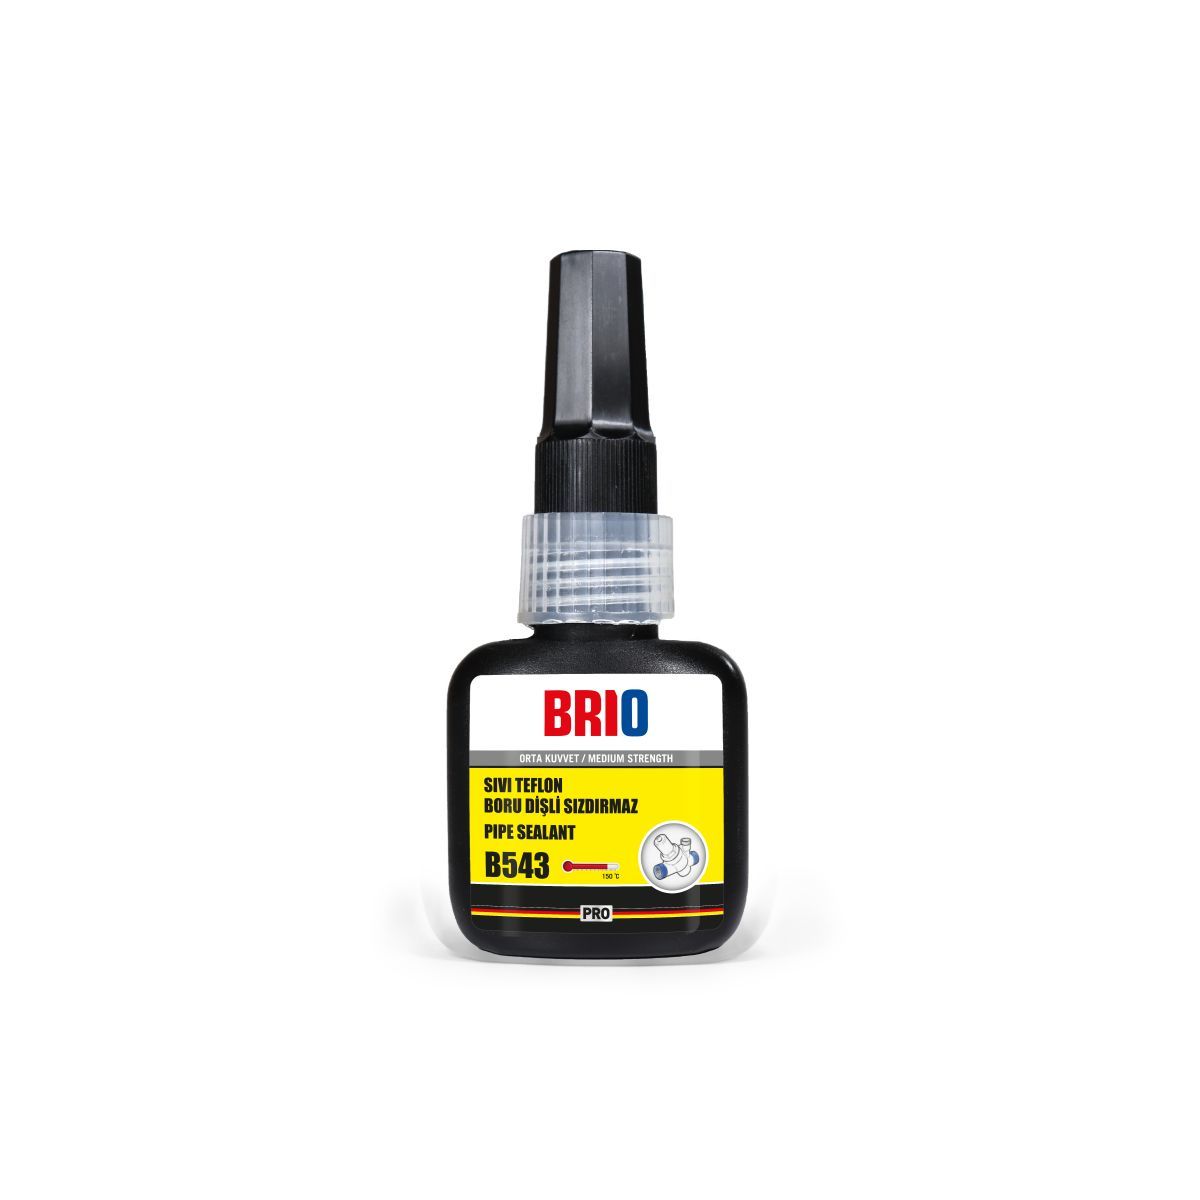 Brio Sıvı Teflon Boru Dişli Sızdırmaz 15 Ml